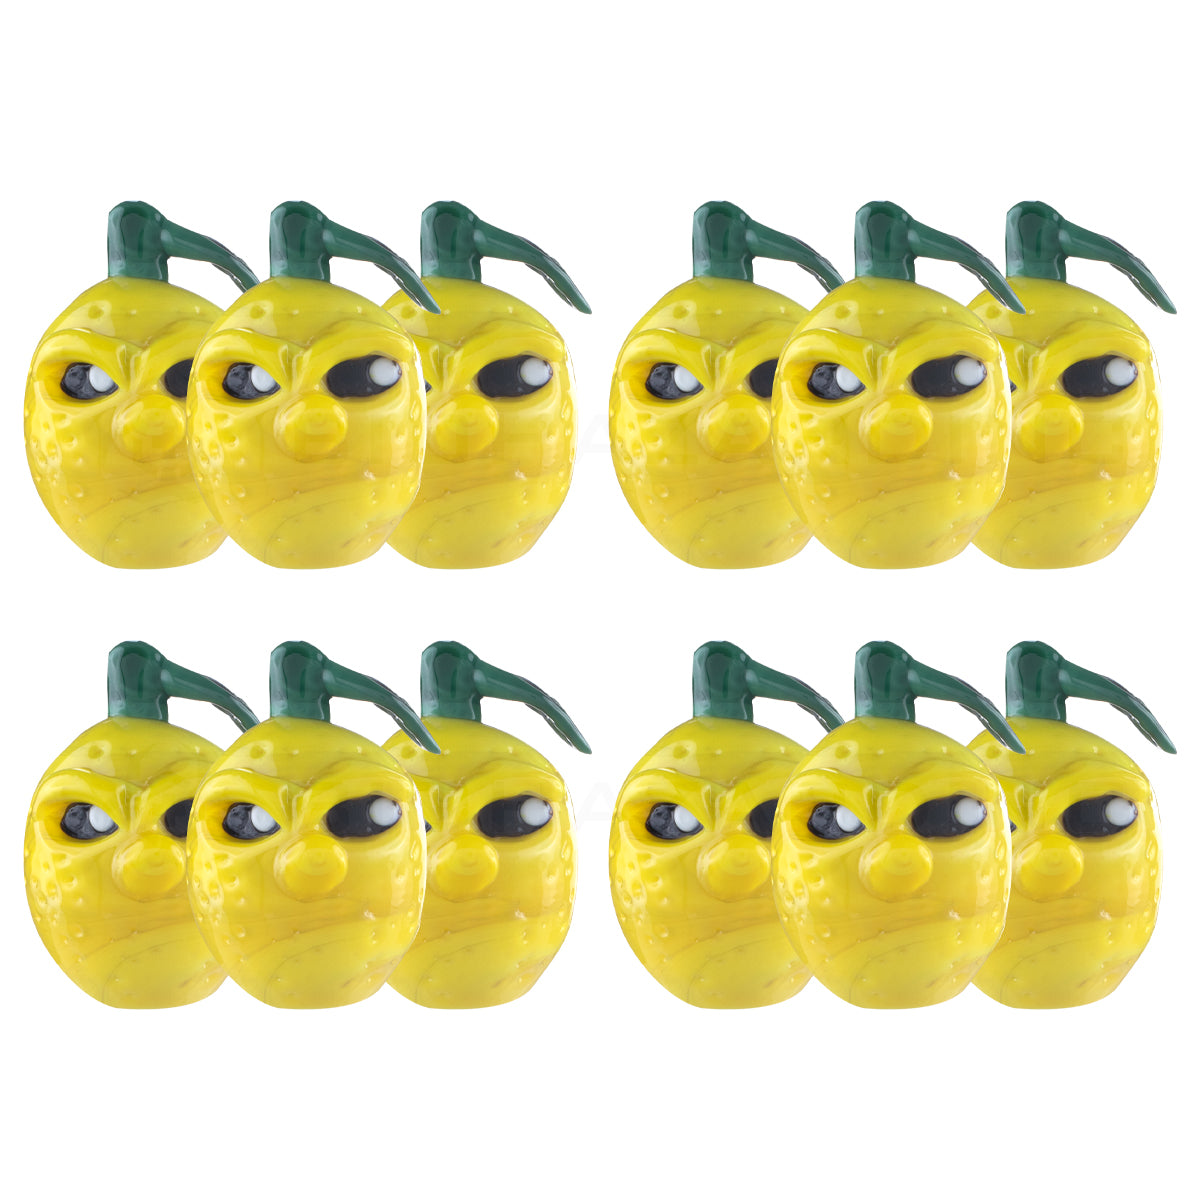 Carb Caps - Sour Lemon - 12 Count Carb Cap Biohazard Inc   